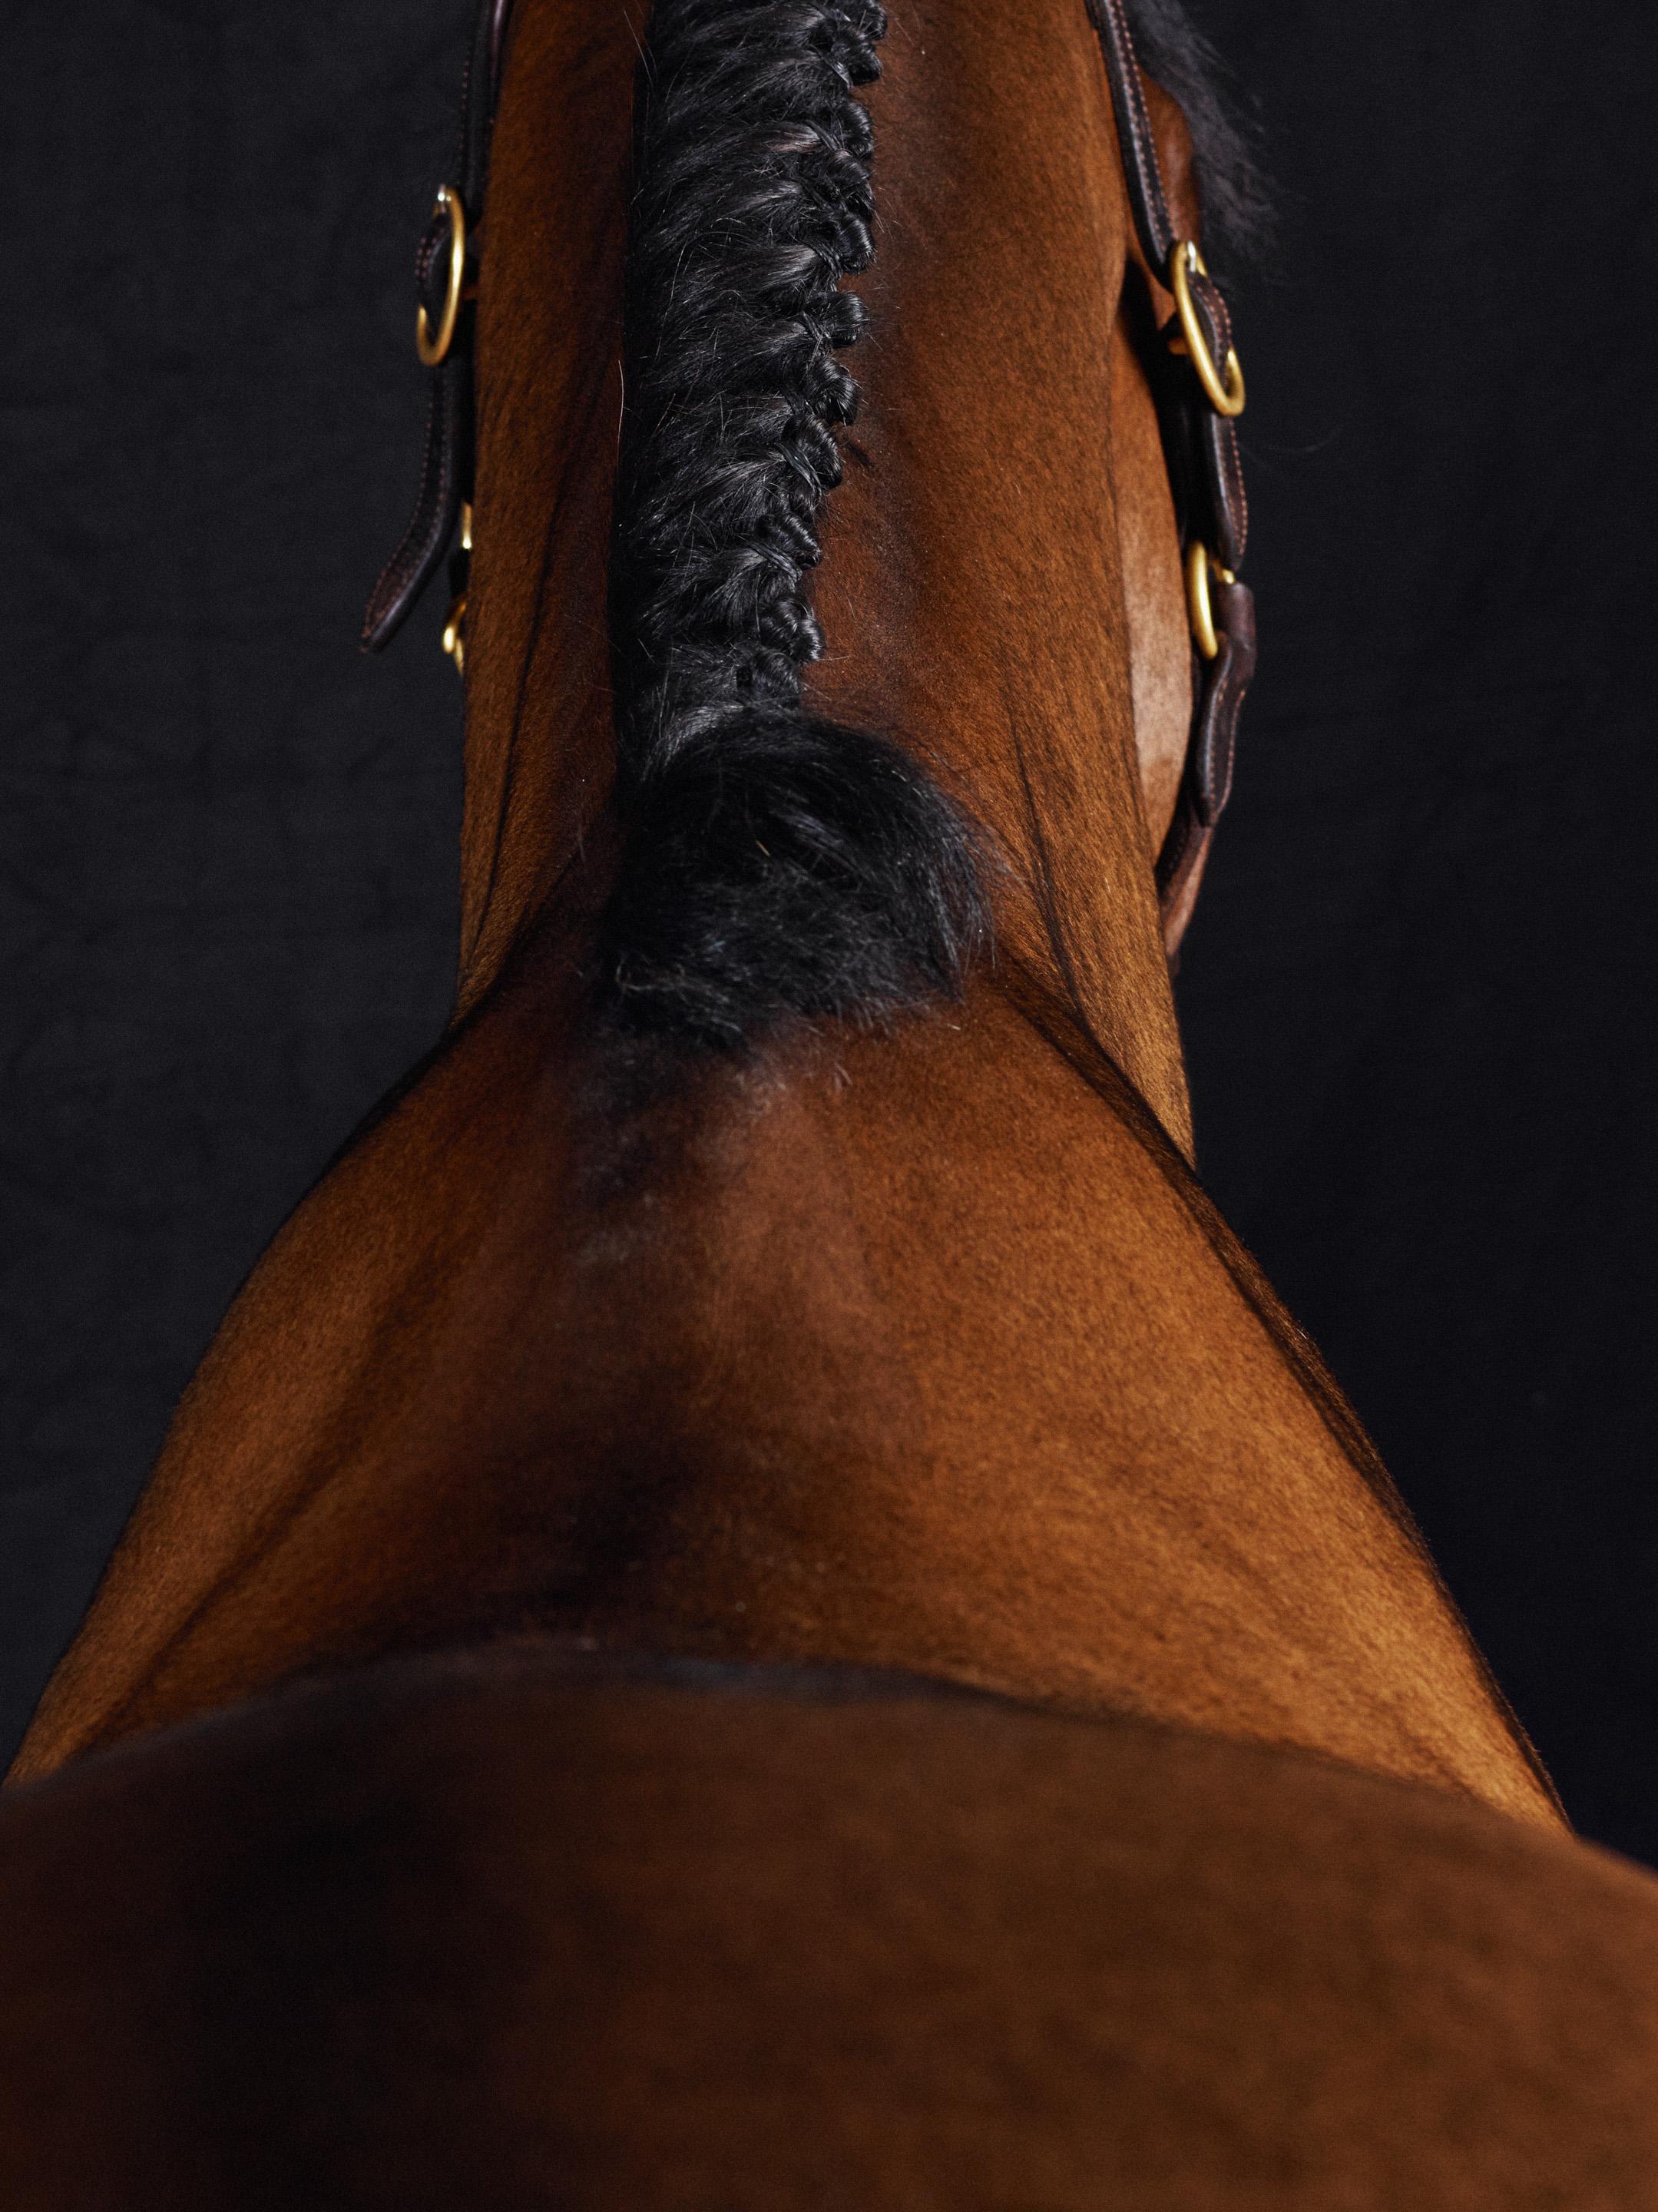 Lamerick II – Pferdeporträt in voller Farbe, limitierte Auflage 2015 (Schwarz), Abstract Photograph, von Juan Lamarca